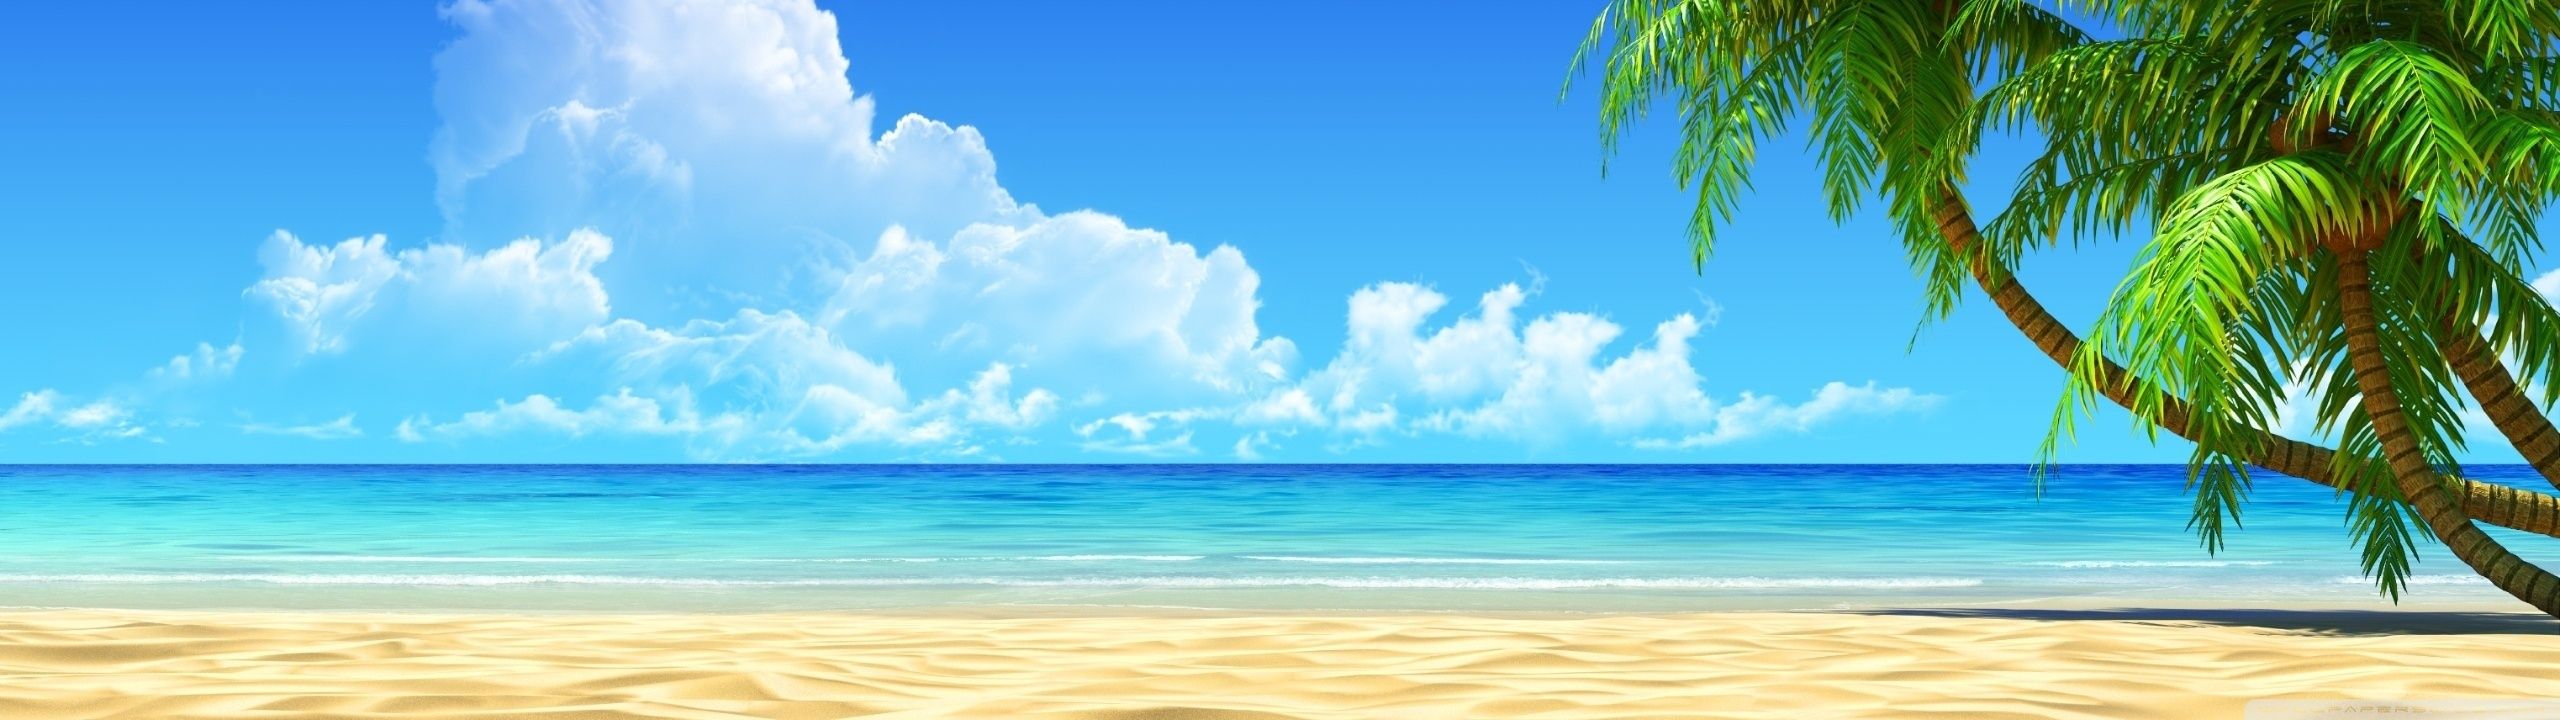 Beach Hd ❤ 4k Hd Desktop Wallpaper For • Wide & Ultra - Beach Wallpaper Dual Screen - HD Wallpaper 